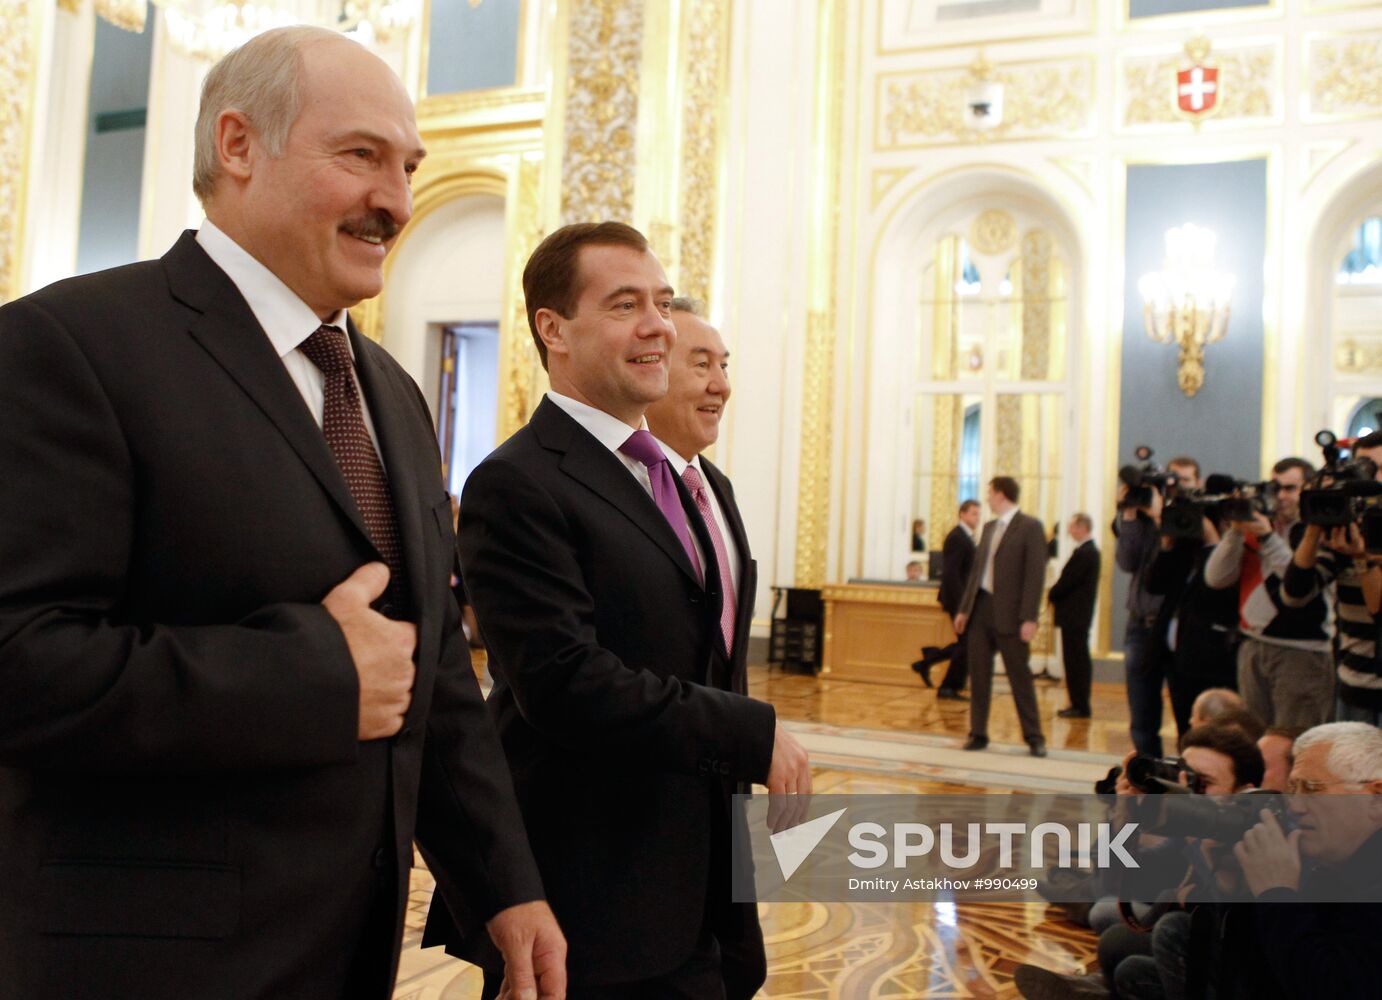 Russian, Belarusian, Kazakh presidents meet in the Kremlin